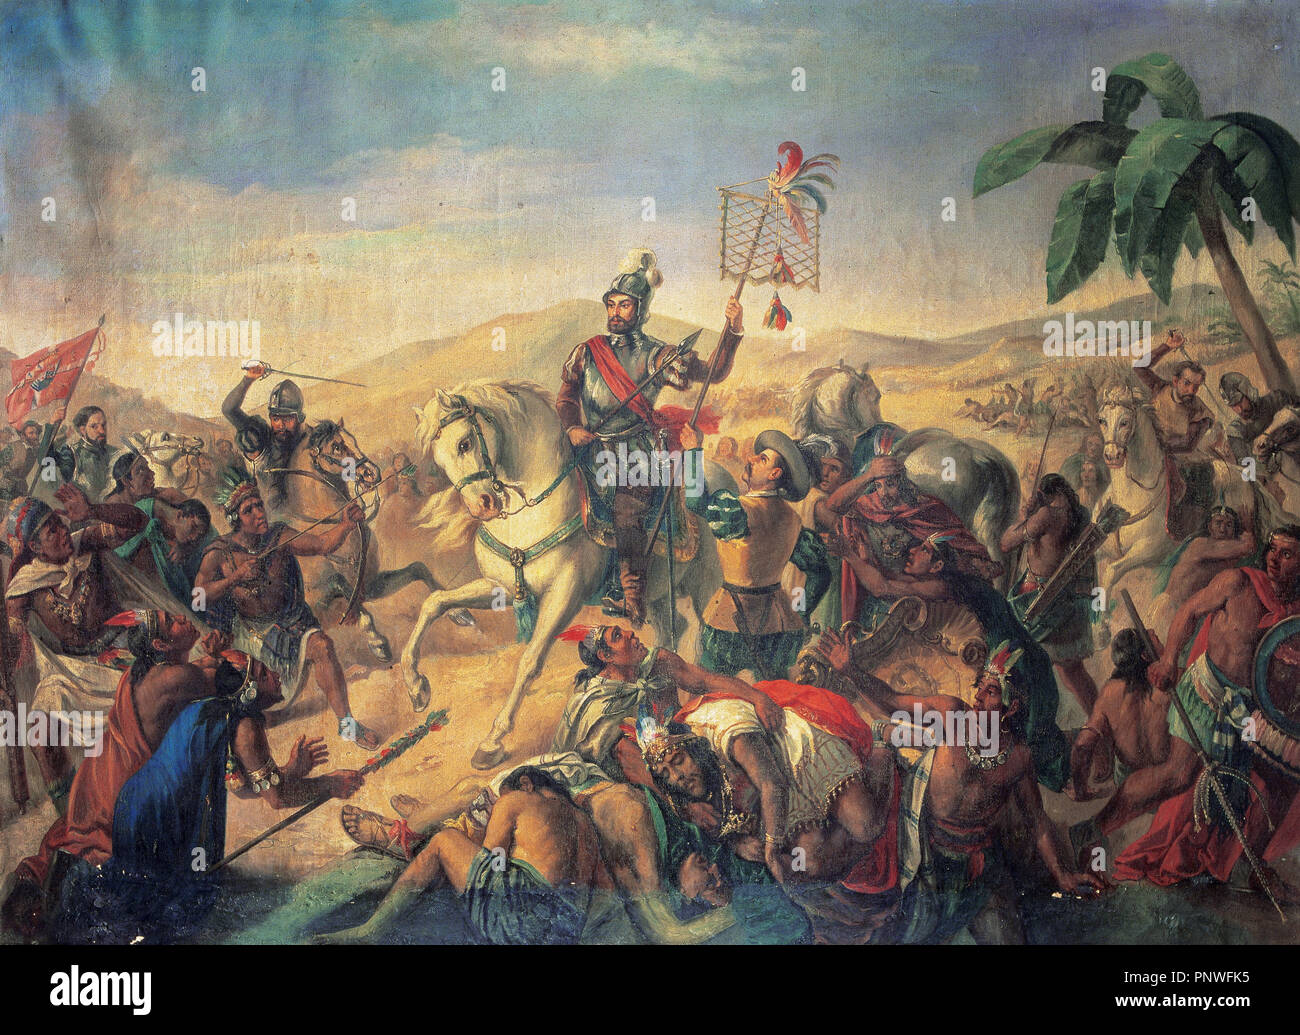 La bataille d'Otumba. Anoyimous la peinture. Musée de l'armée. Madrid. L'Espagne. Banque D'Images